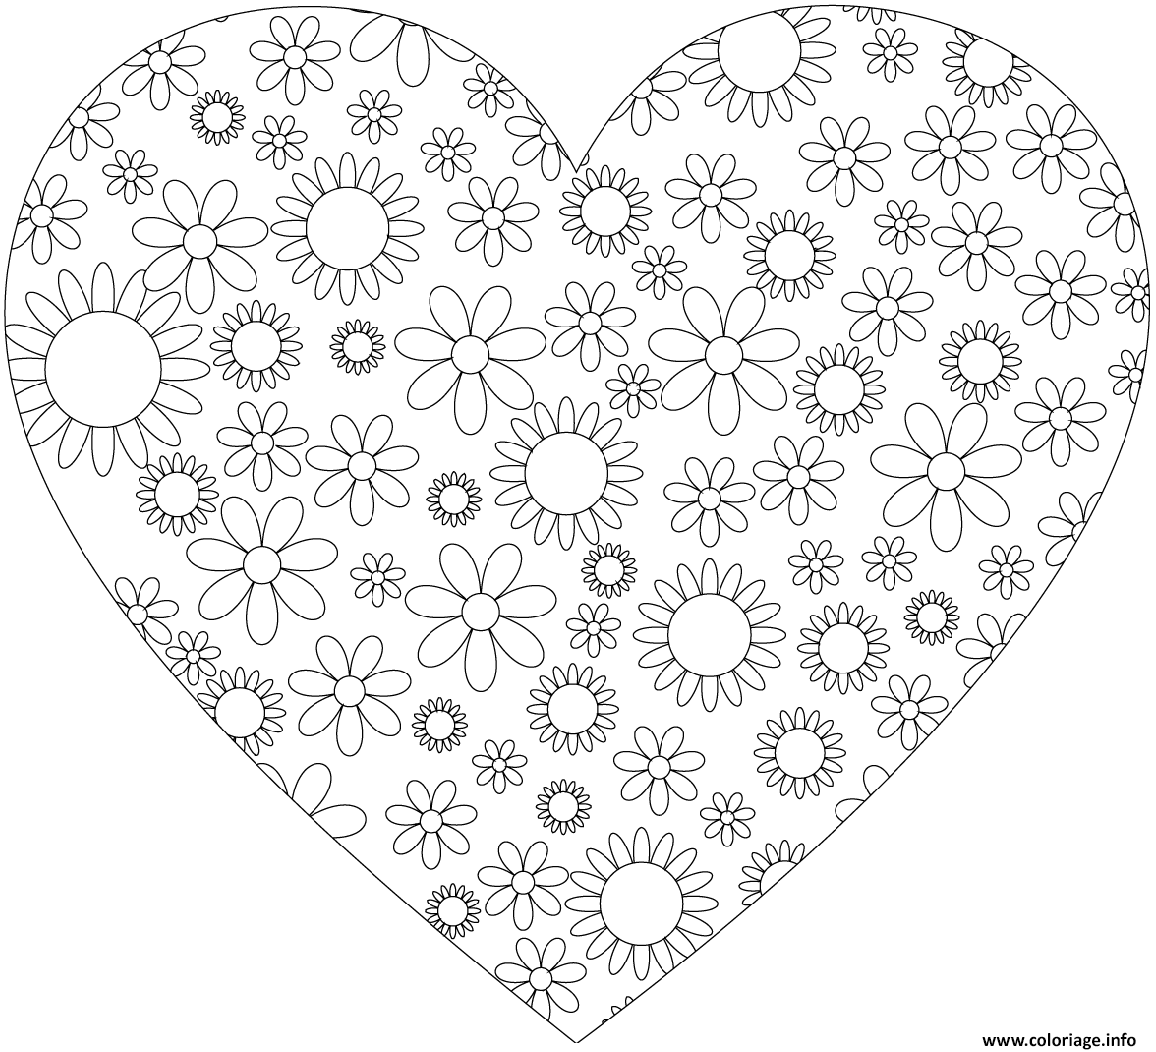 Dessin coeur simple avec motifs de fleurs Coloriage Gratuit à Imprimer